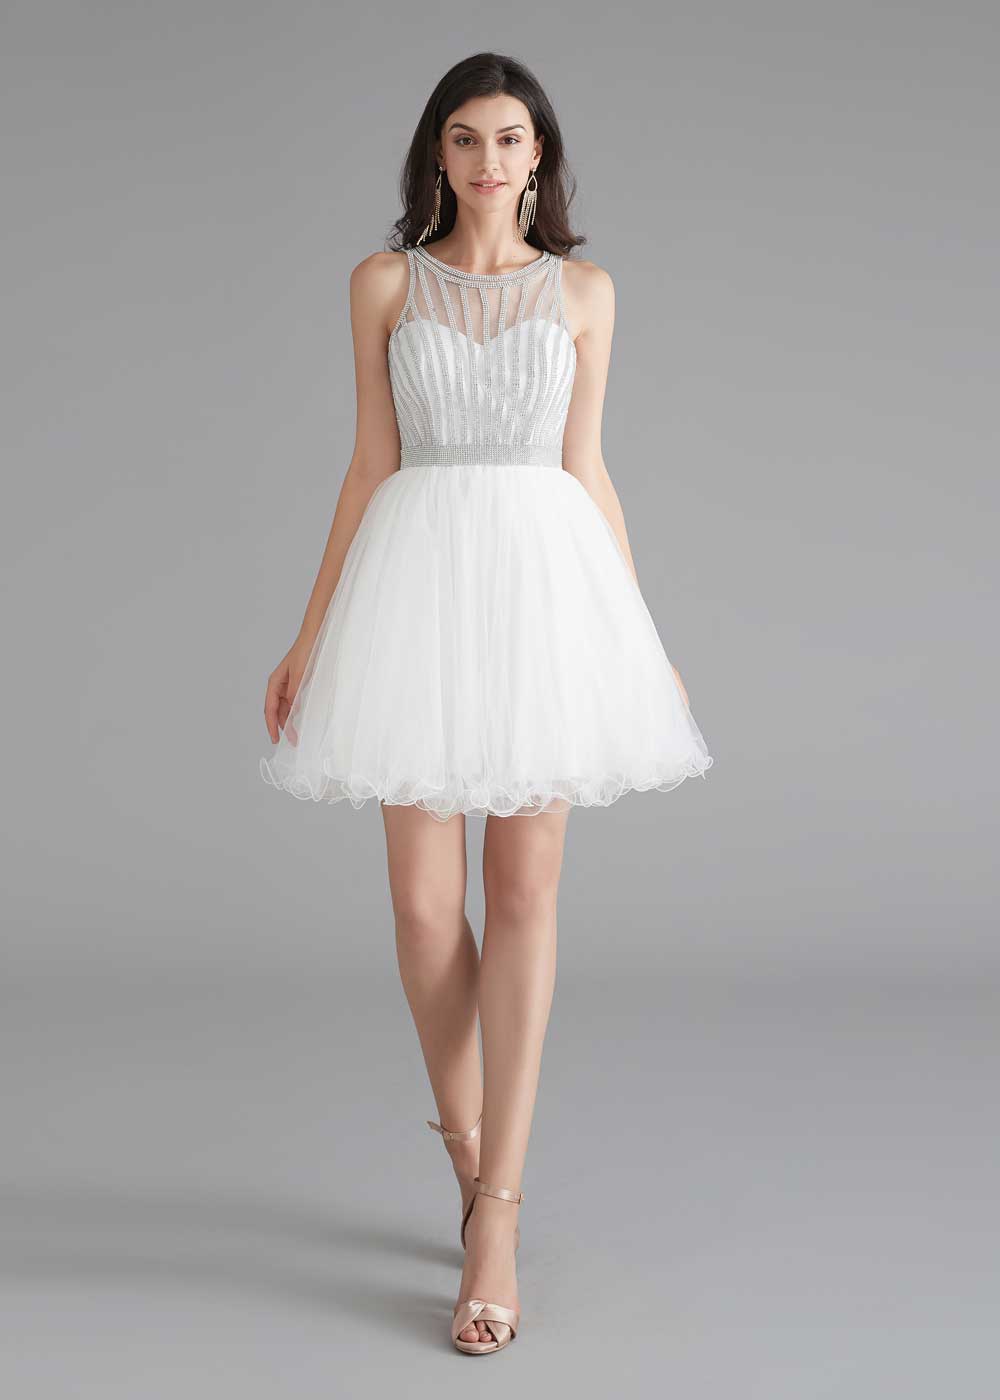 White tulle short prom dress, white tulle homecoming dress